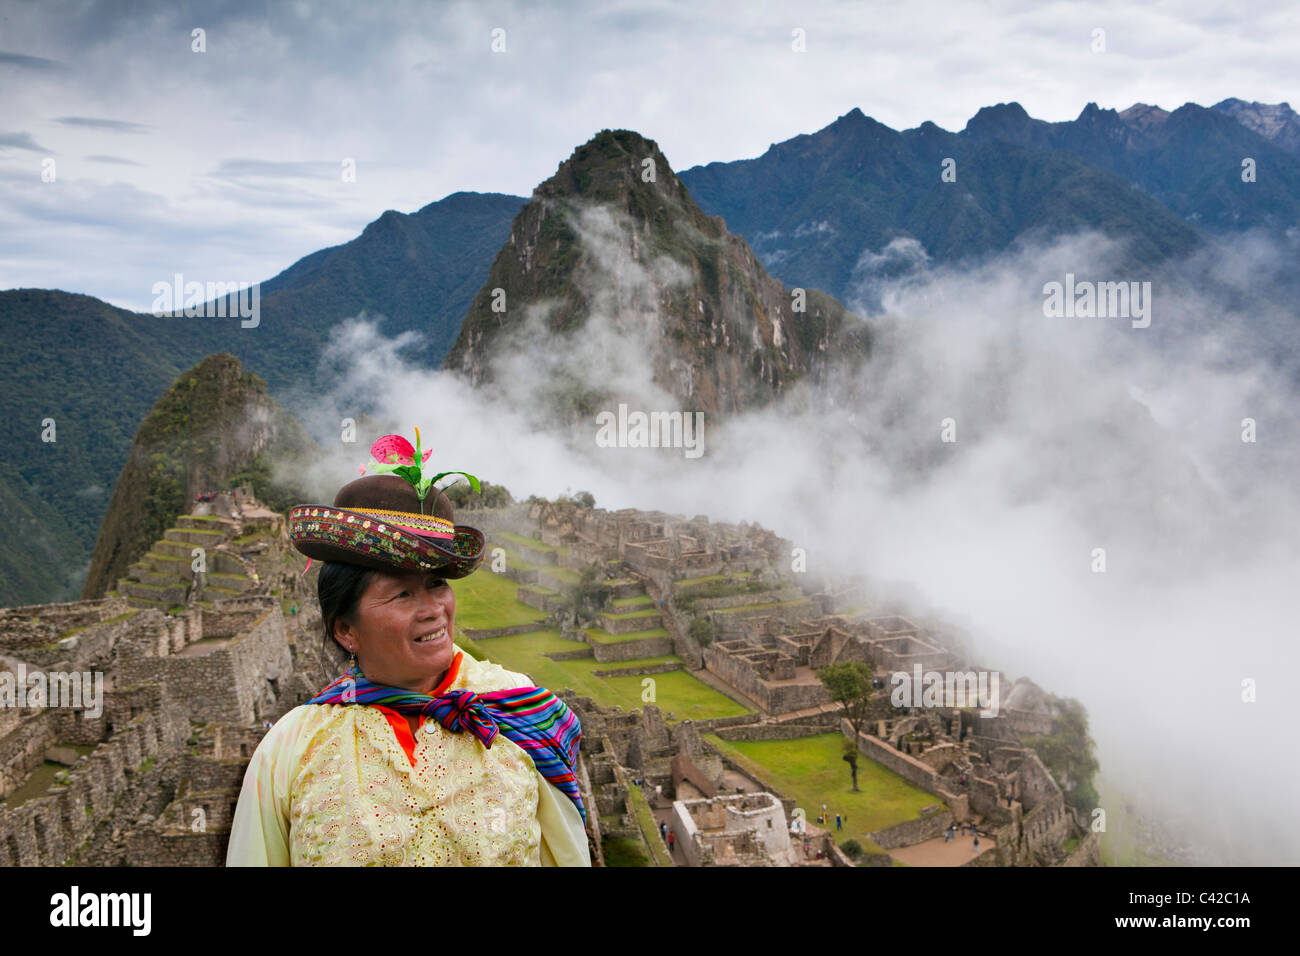 Le Pérou, 15ème siècle site Inca situé à 2 430 mètres (7 970 ft) au-dessus du niveau de la mer. Tourisme indien, femme. Banque D'Images